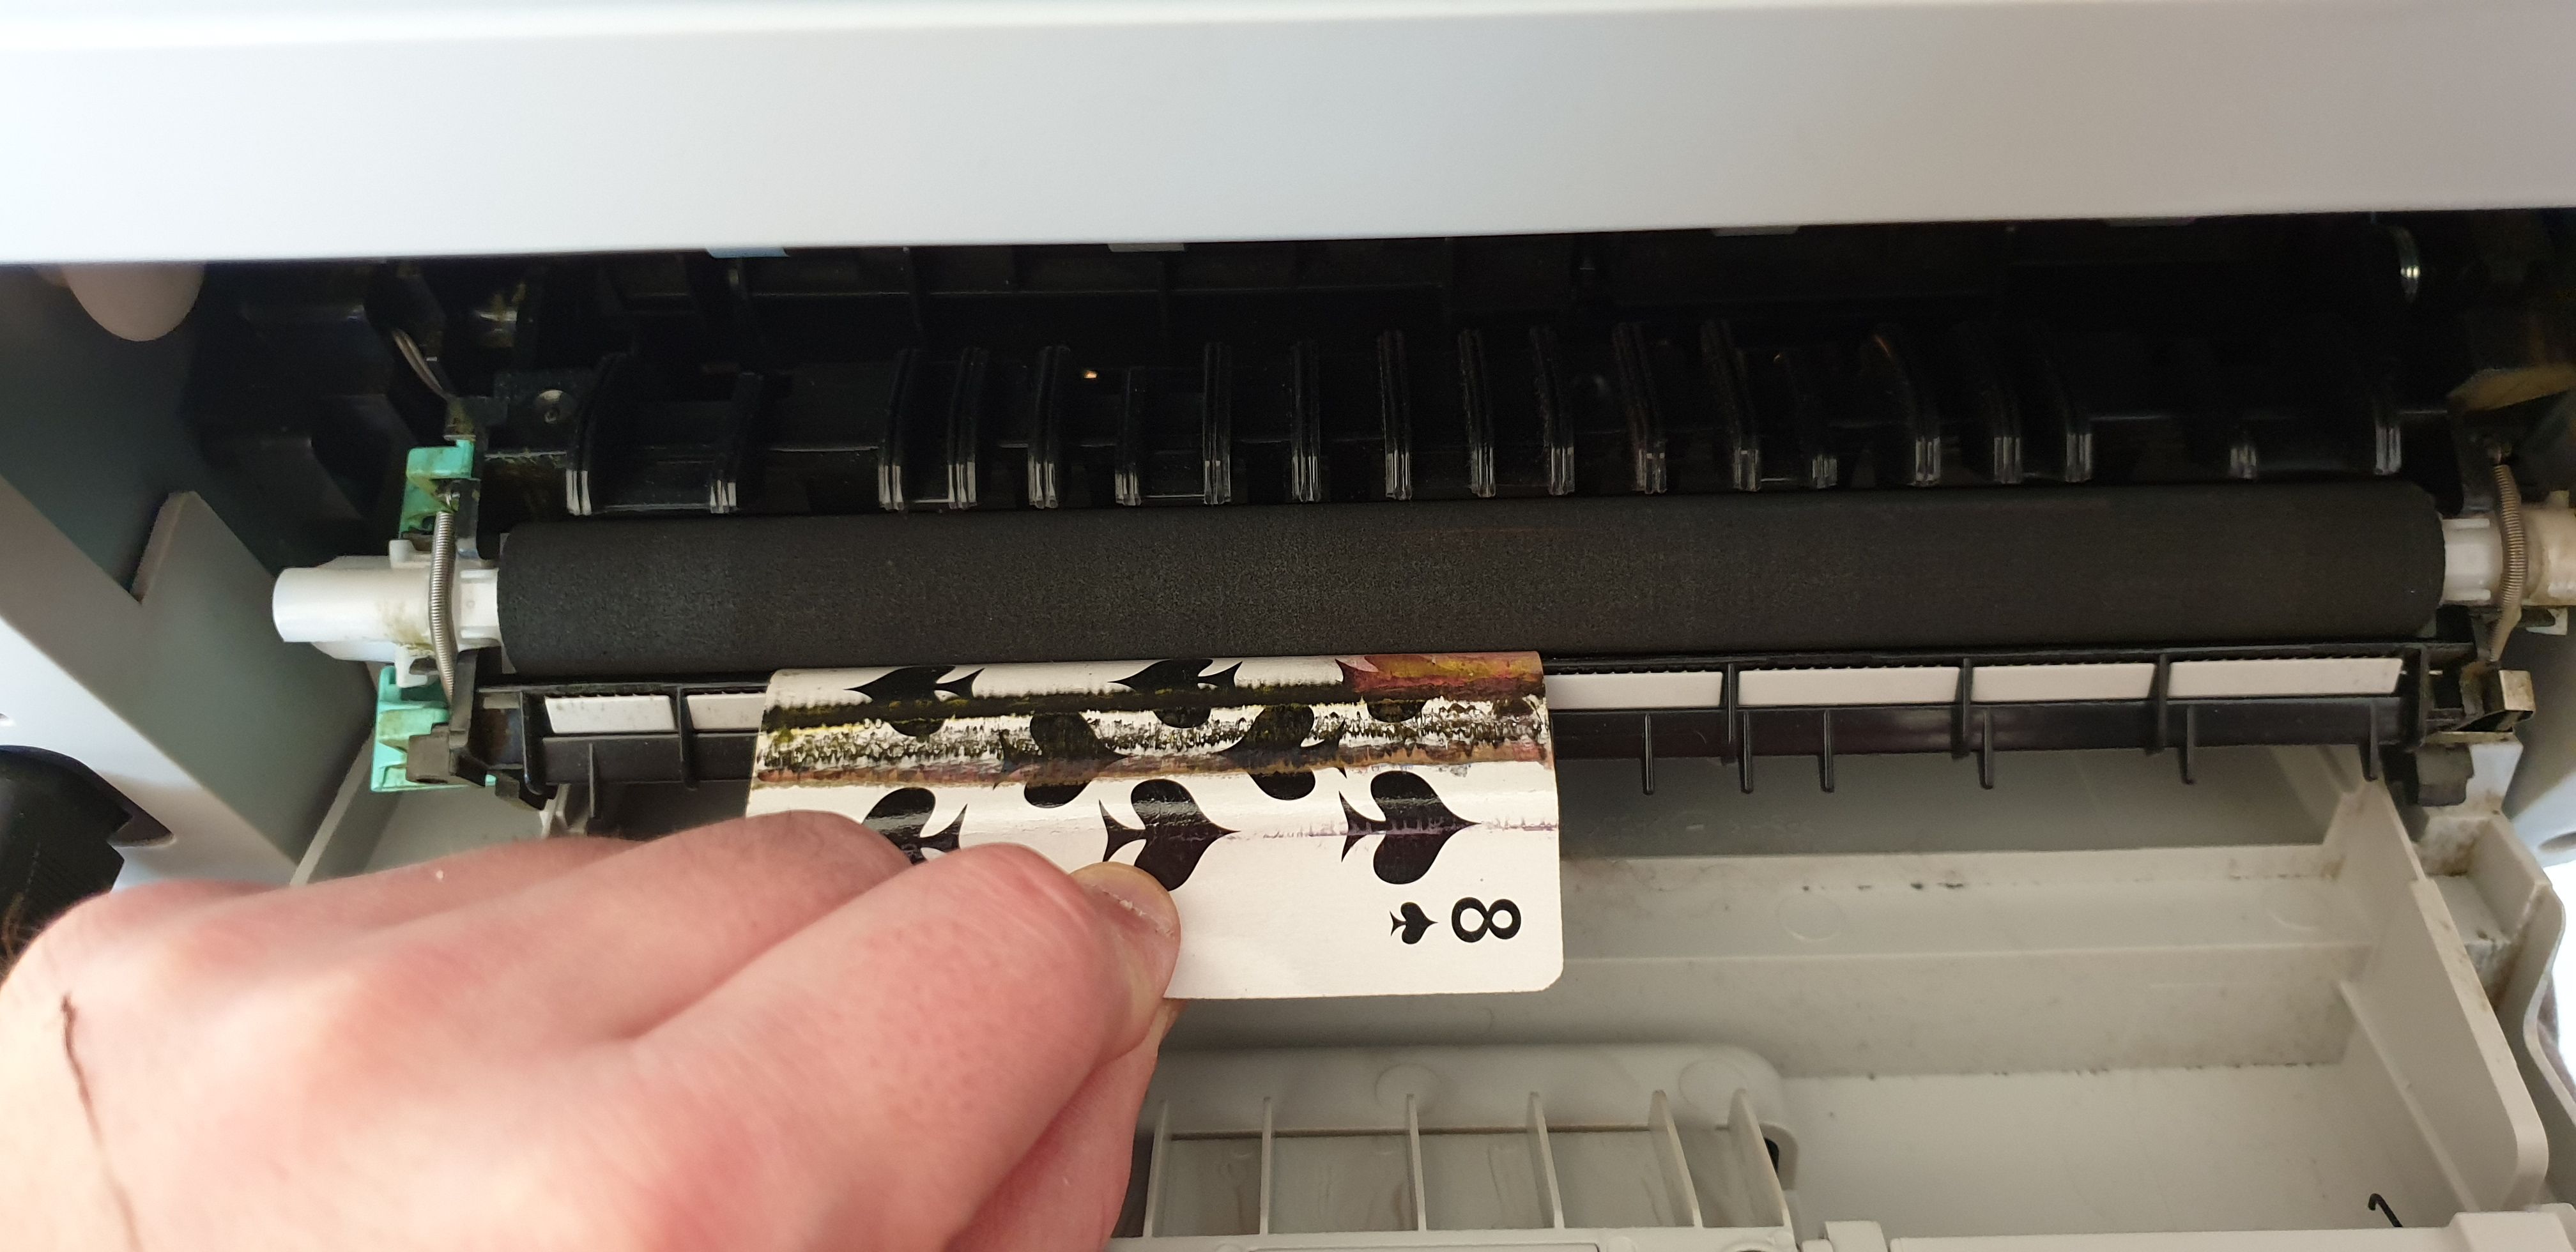 Pourquoi mon imprimante ne prend plus les feuilles ? - TUTO